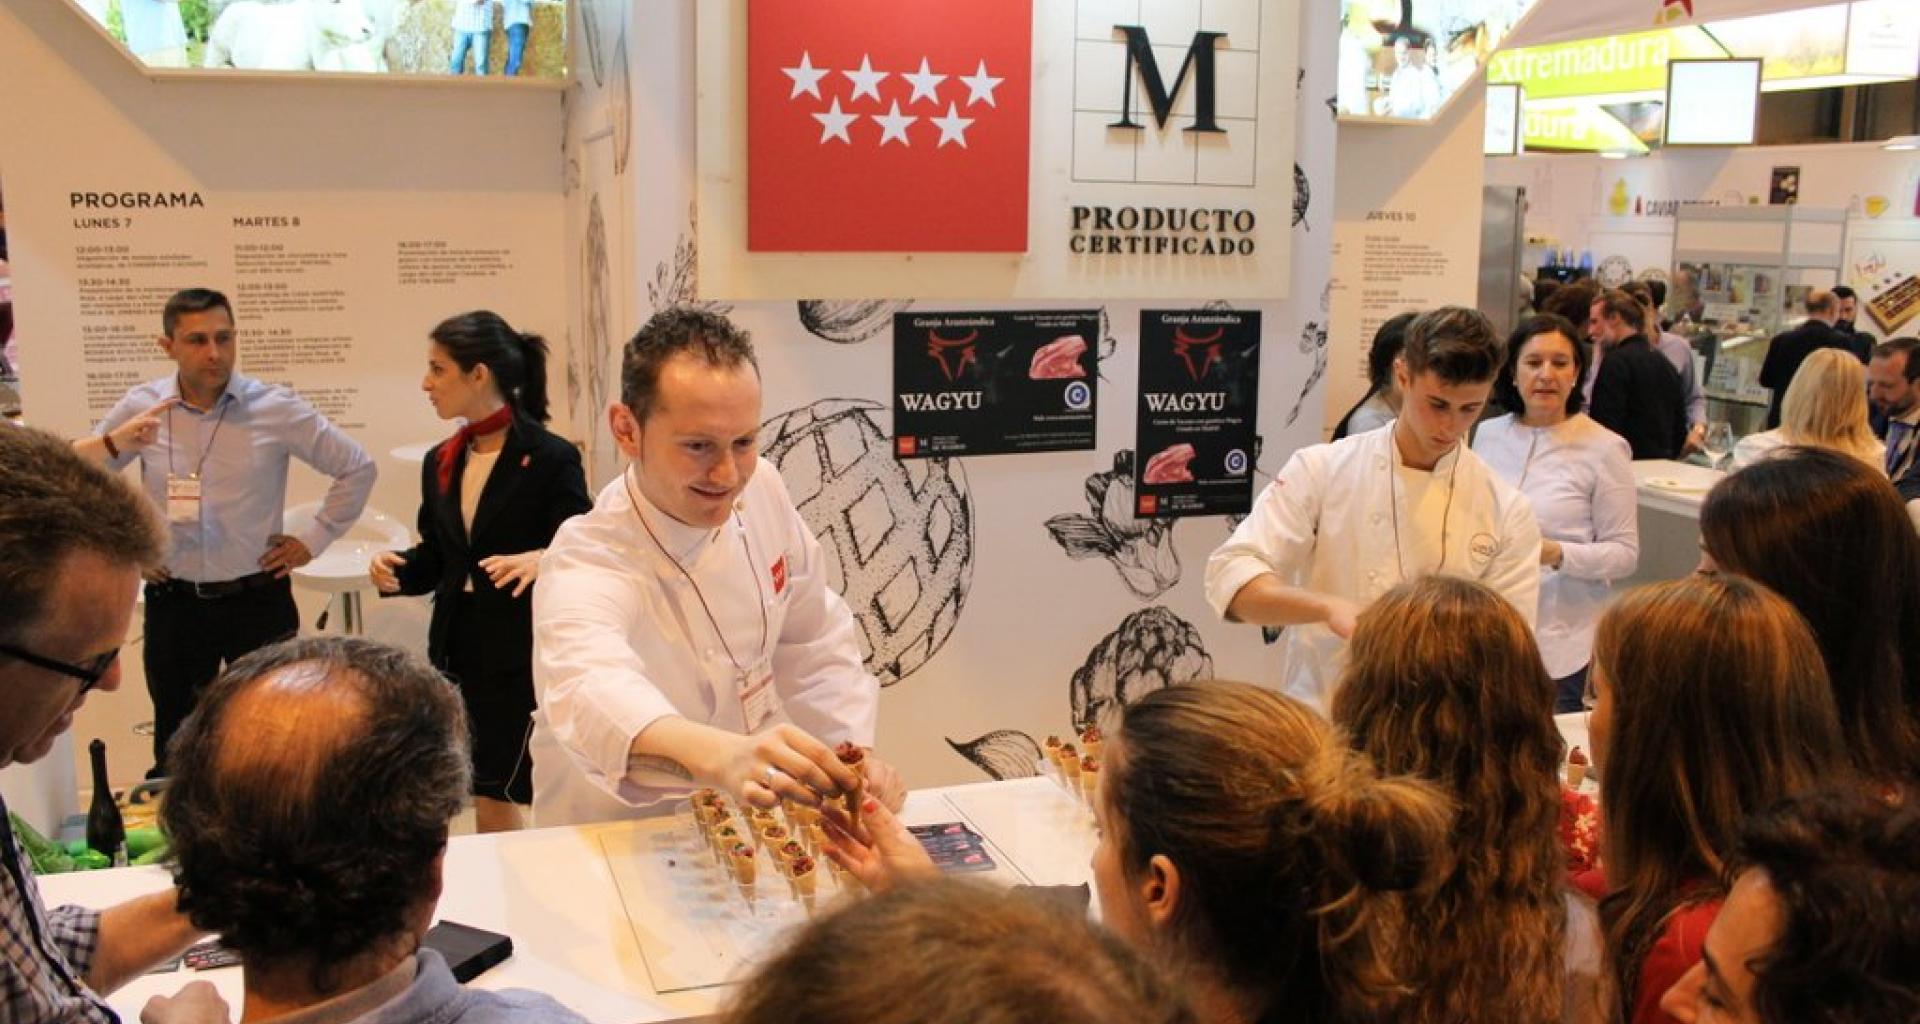 Madrid Fusión con una veintena de actividades, cerca de 30 empresas y más de diez maestros cocineros